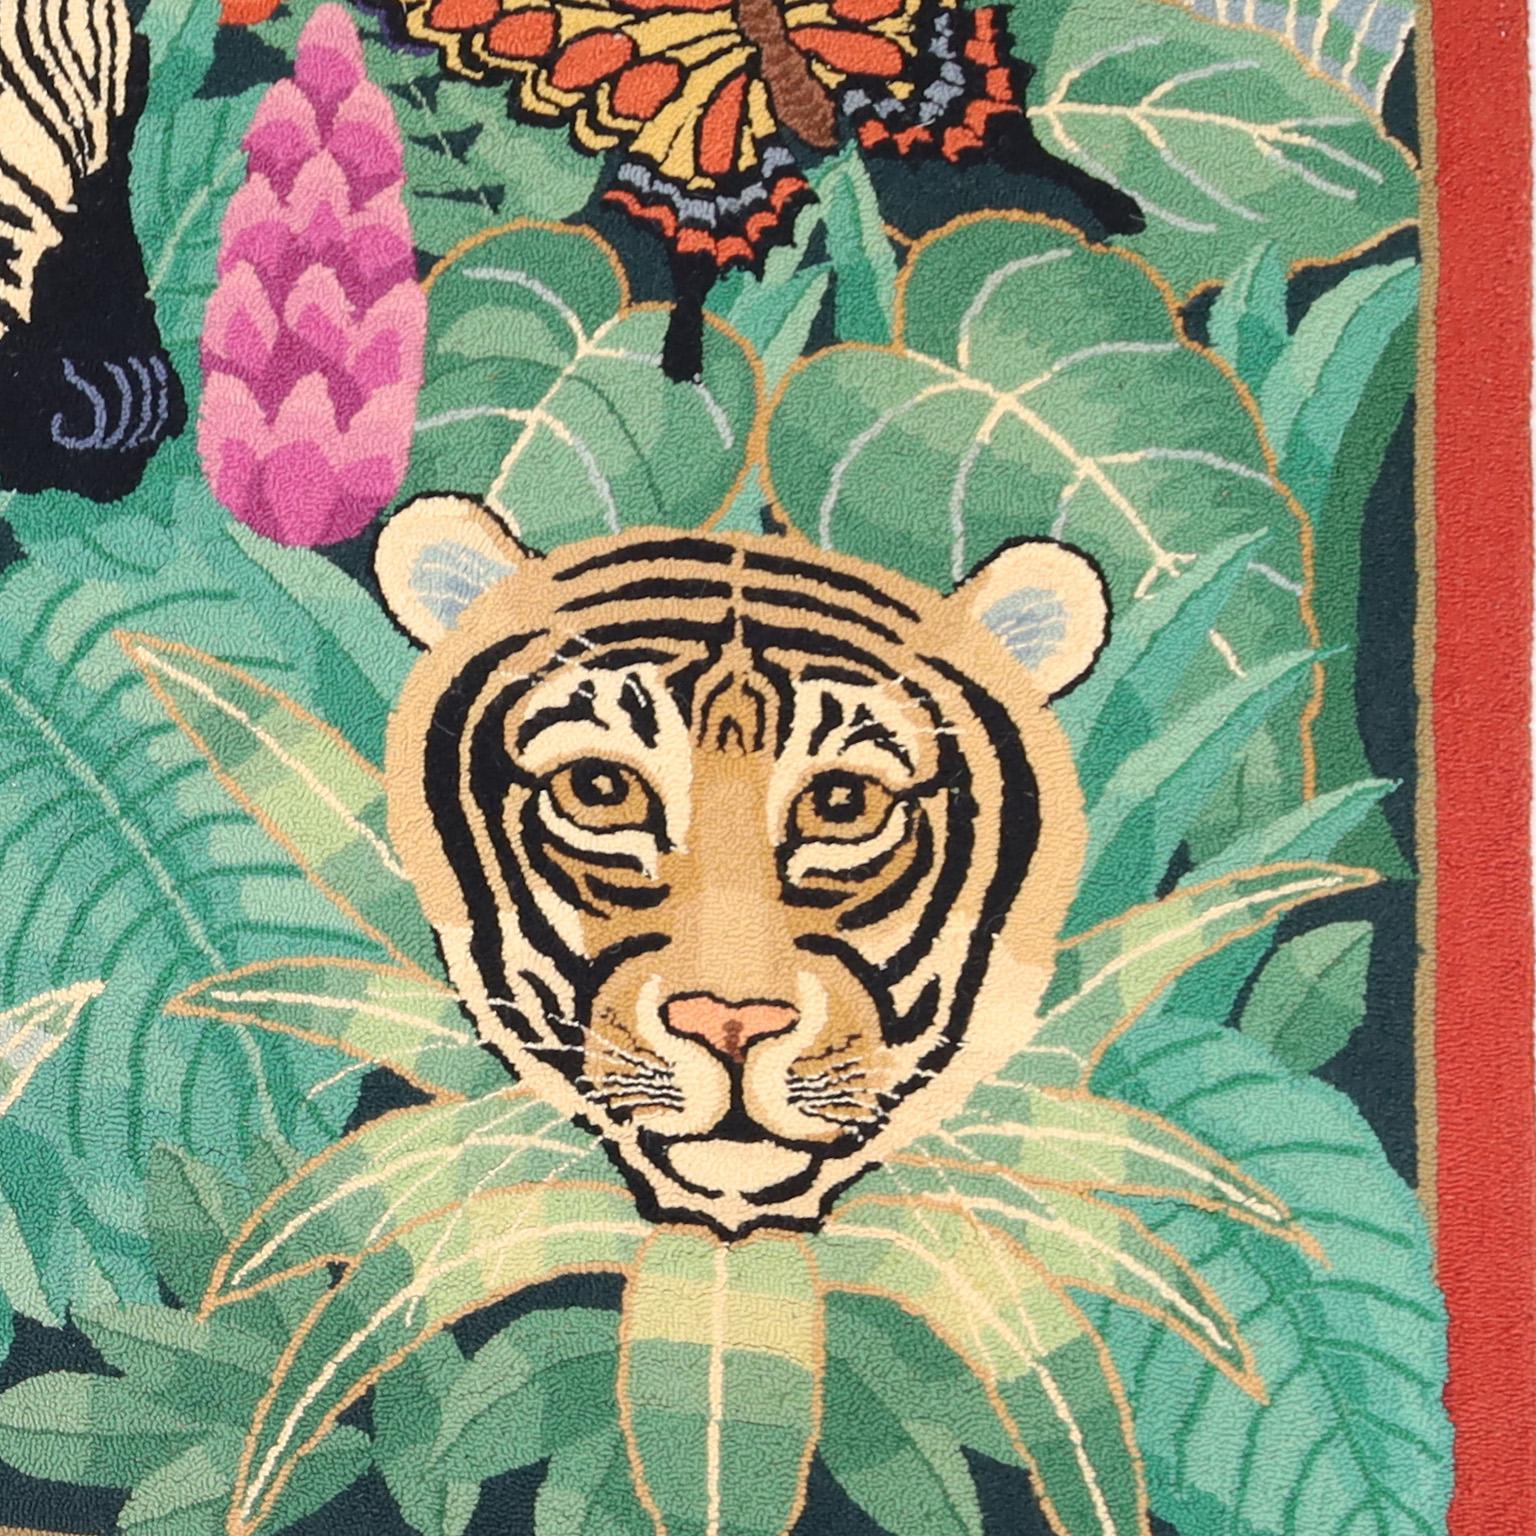 Auffälliger Vintage-Hakenteppich mit einer farbenfrohen Komposition aus Vögeln, Blumen und afrikanischen Tieren in einer Dschungelumgebung.